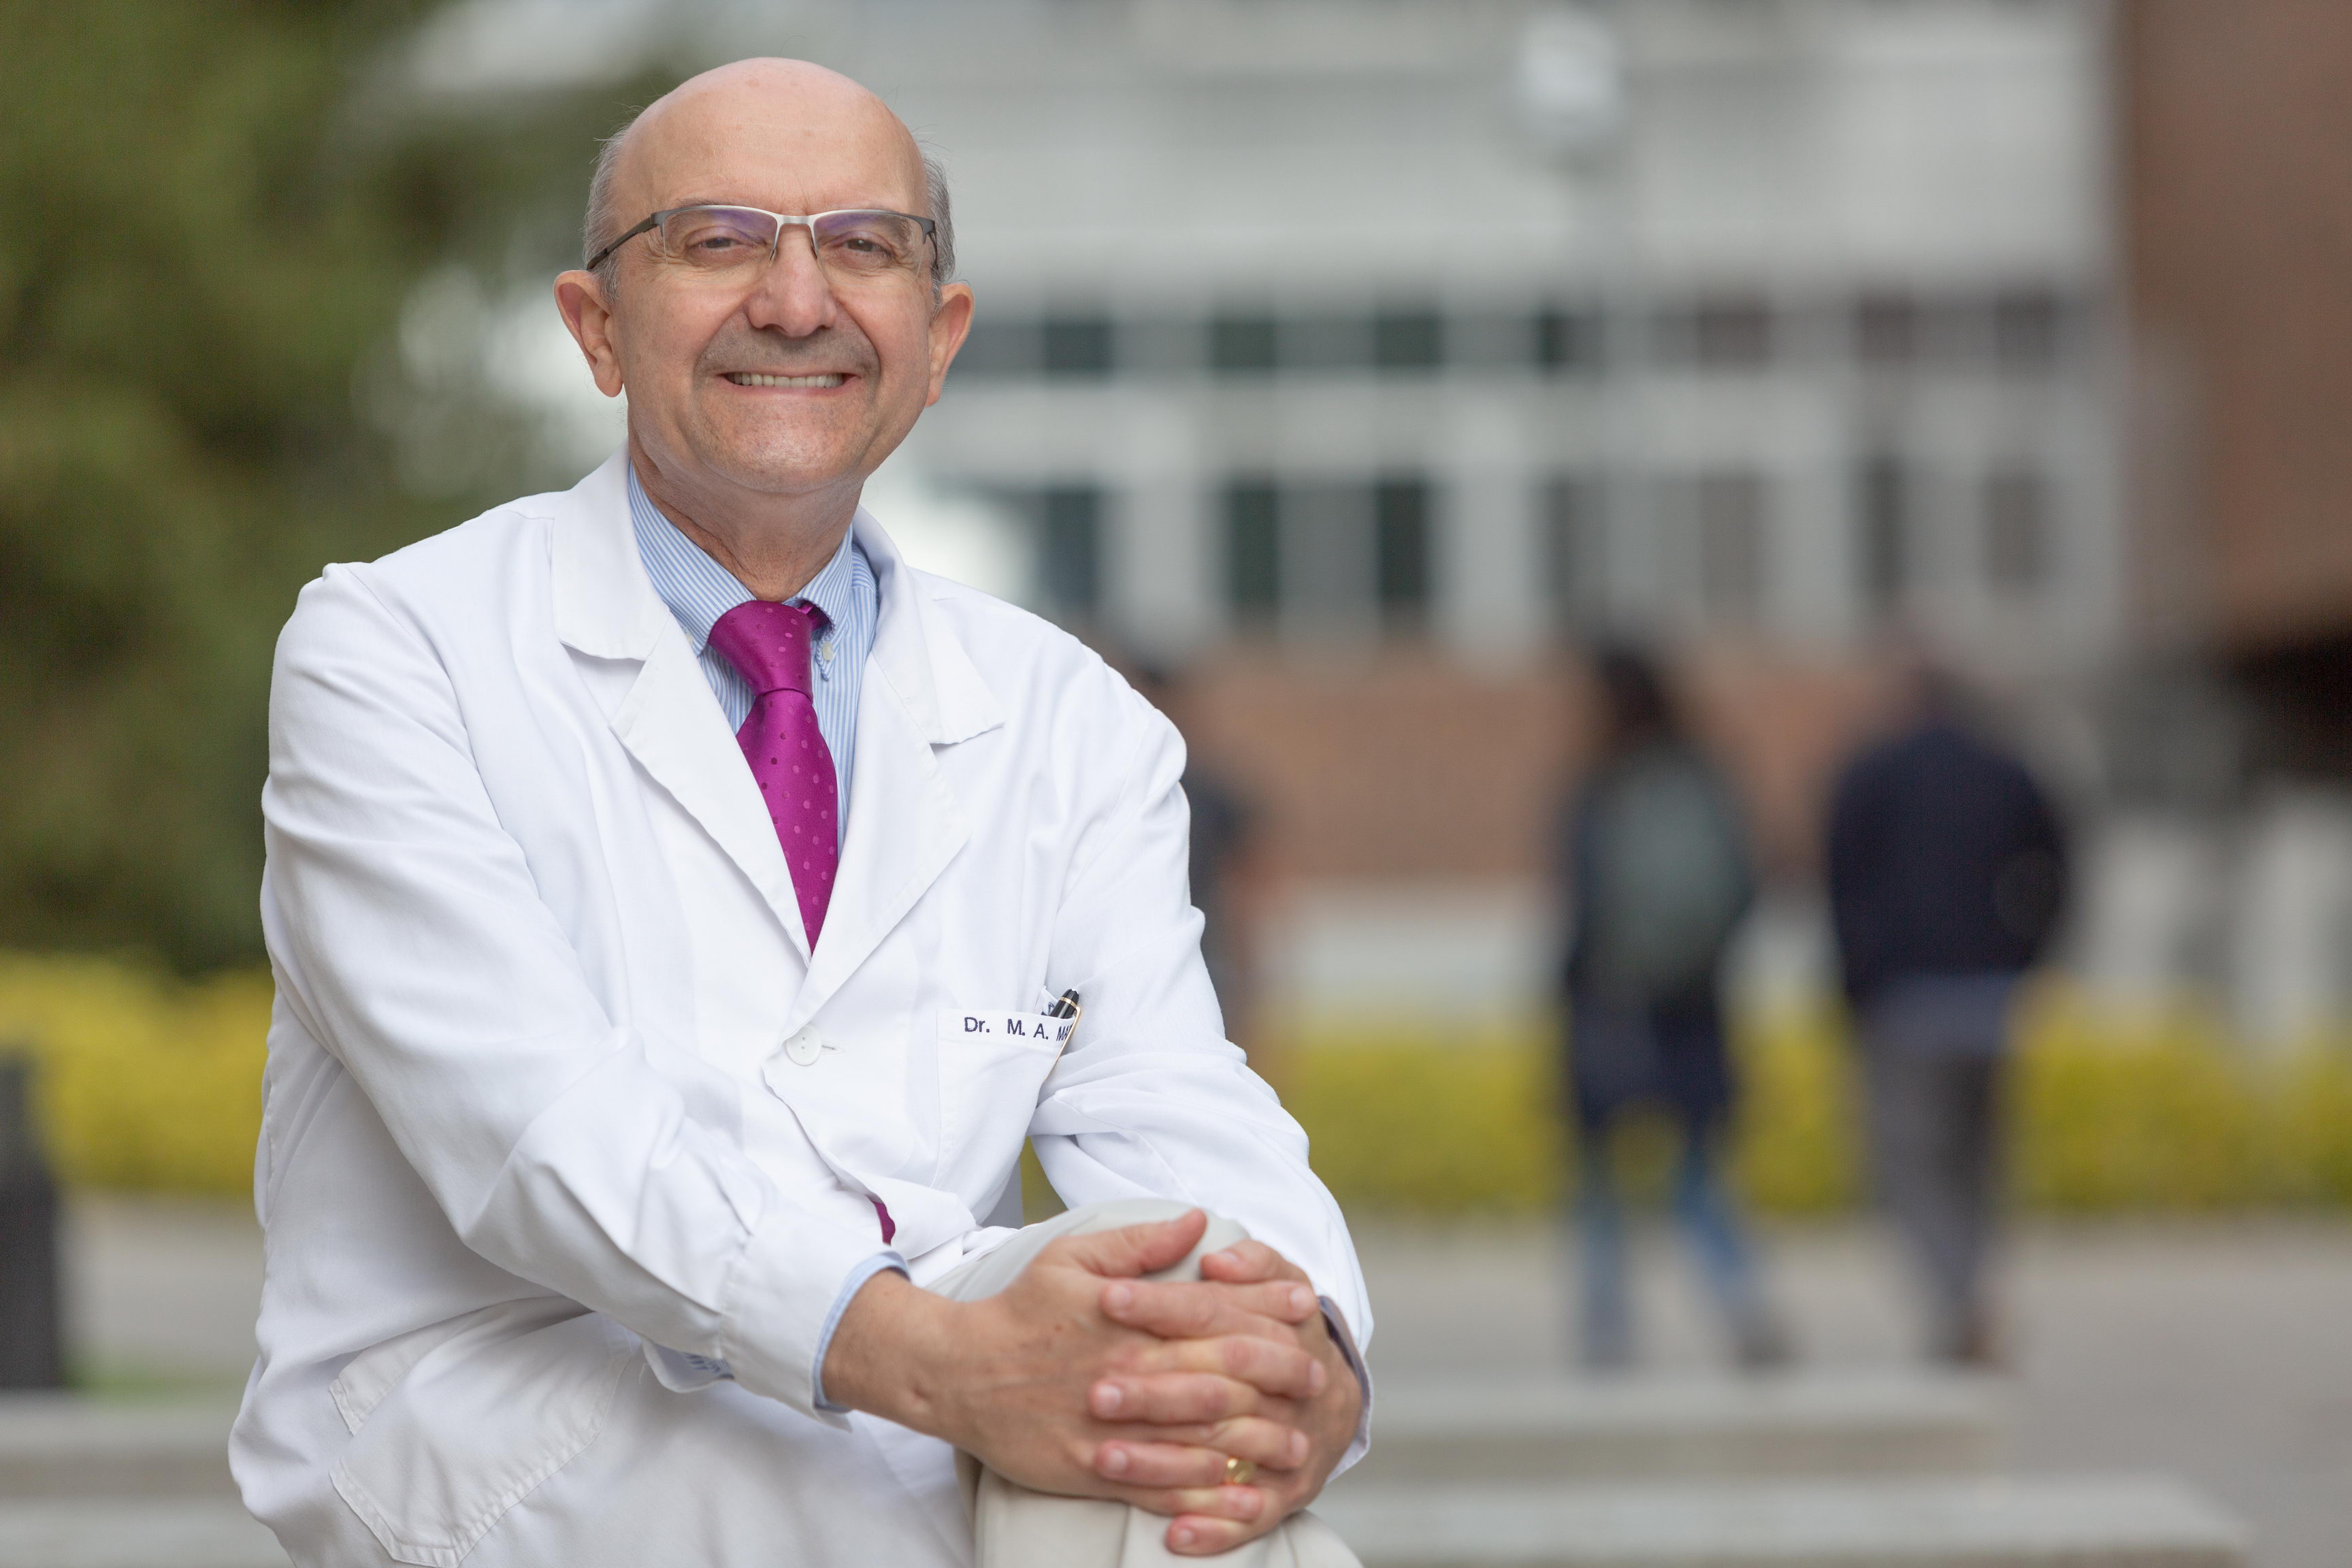 Es la segunda vez que Miguel Ángel Martínez-González, catedrático de Medicina Preventiva de la Universidad de Navarra, ha logrado la ayuda del Consejo Europeo de Investigación como investigador principal.